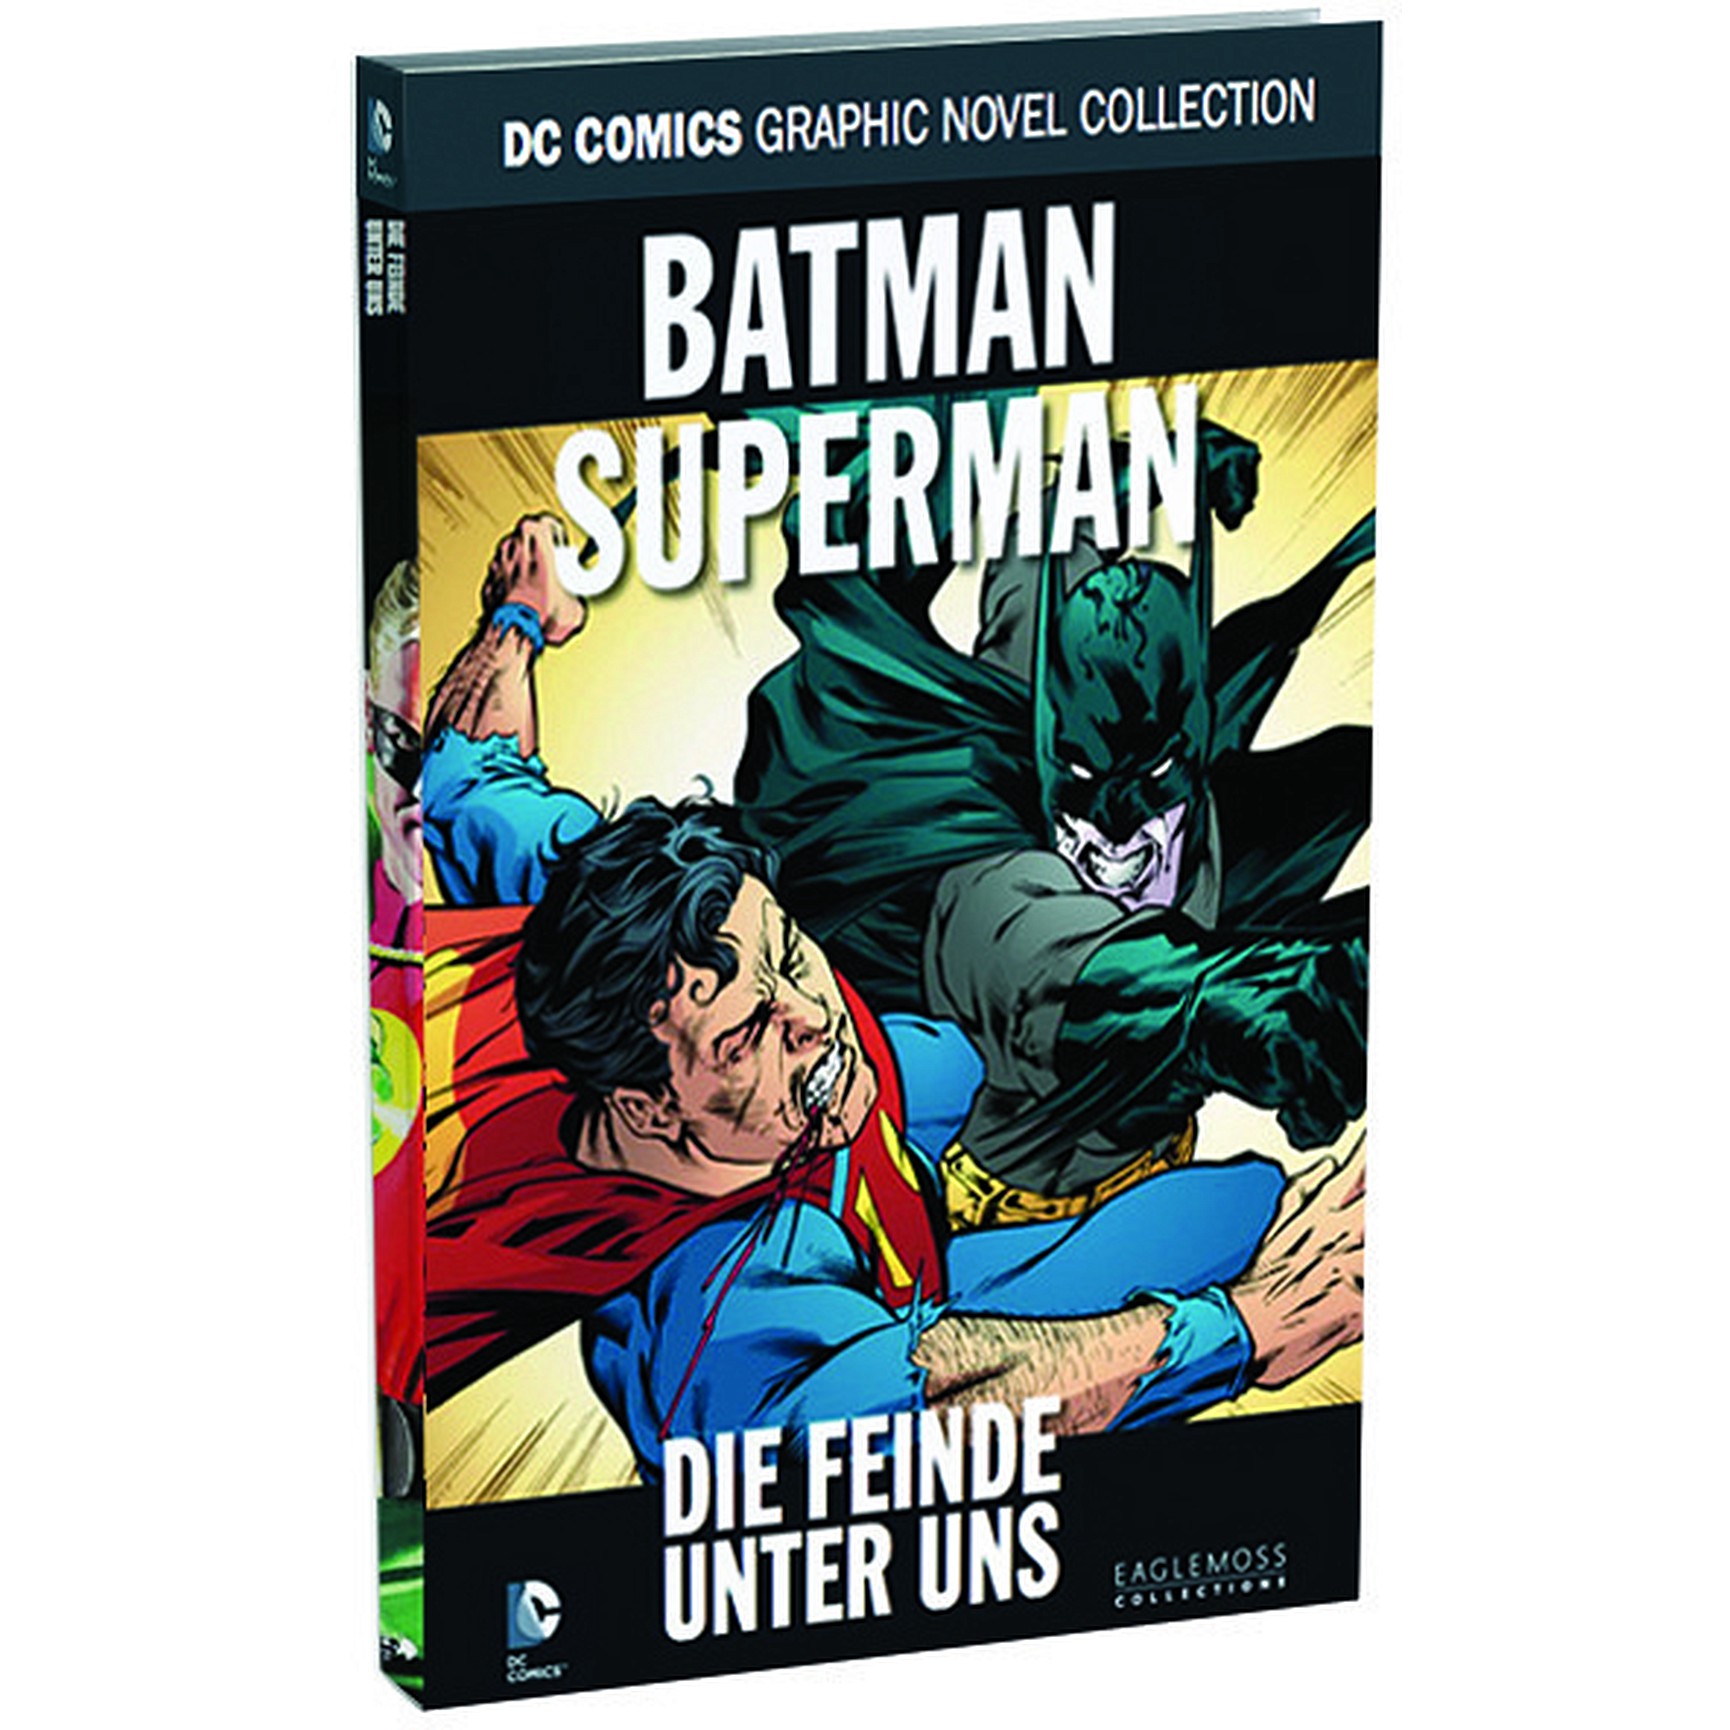 DC Comics Graphic Novel Collection Batman Superman - Die Feinde unter uns